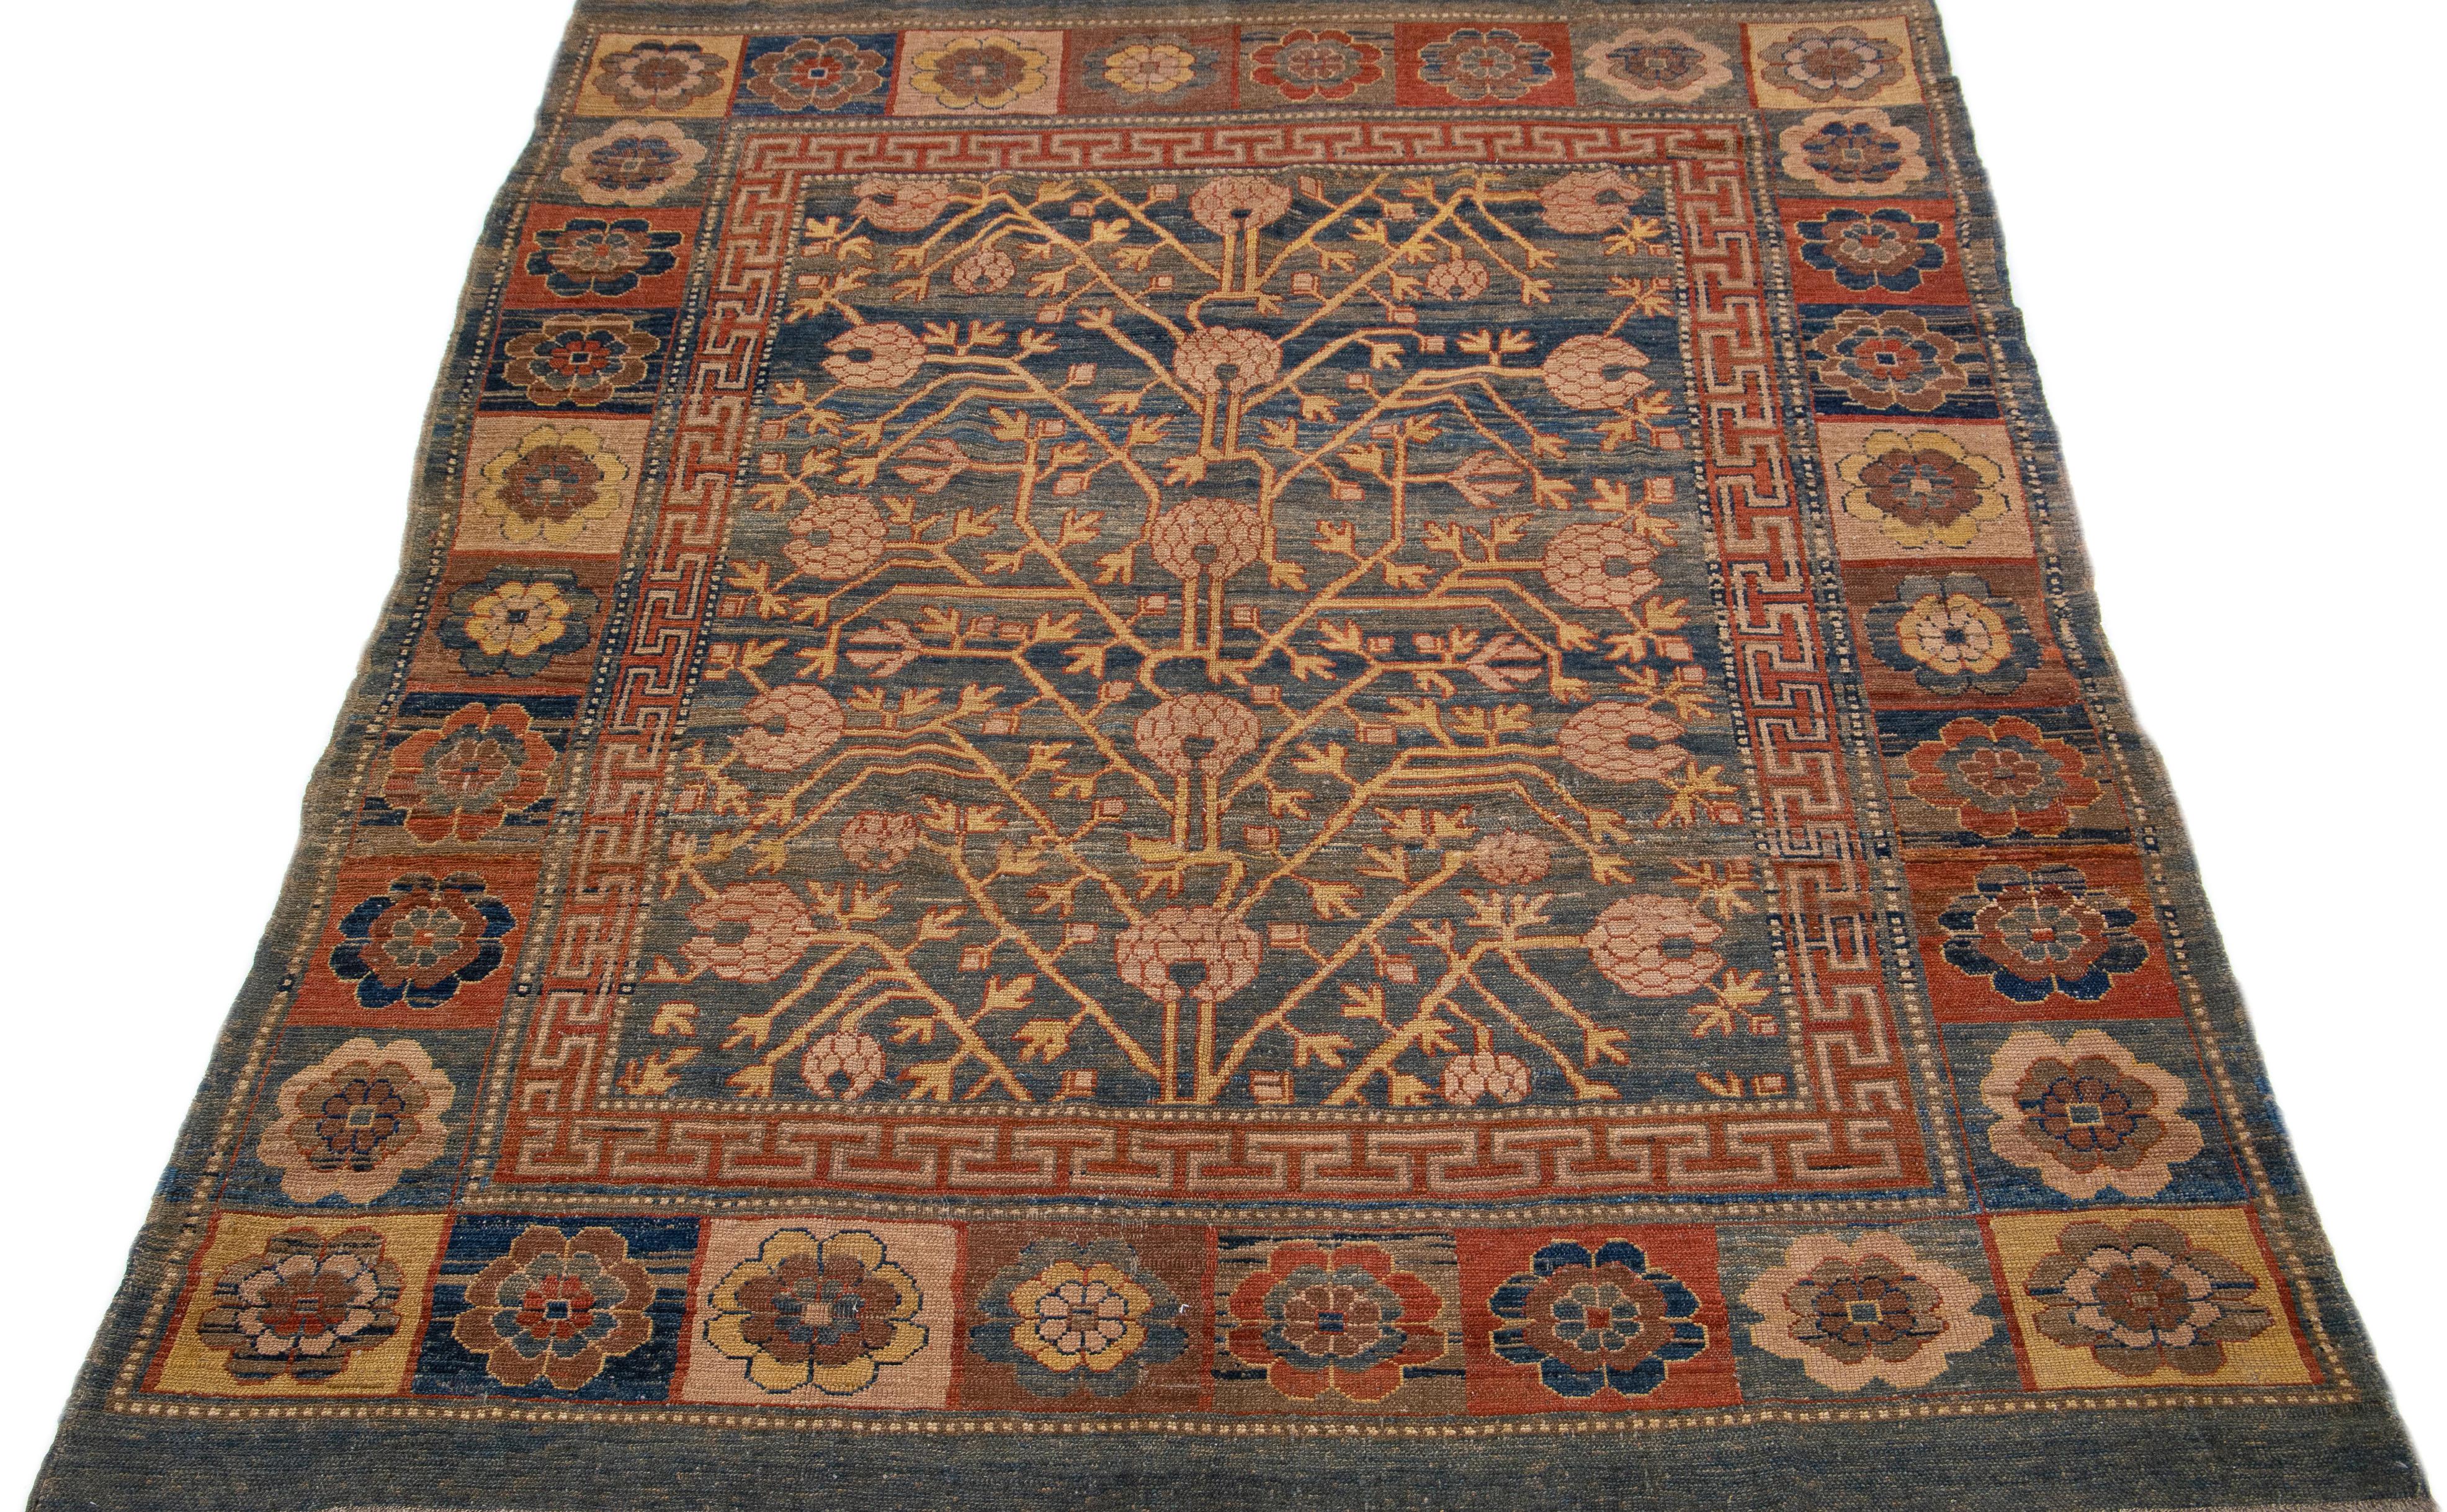 Dieser Vintage-Teppich strahlt mit seinem bezaubernden, von Khotan inspirierten Wollmaterial Eleganz aus. Er ist mit einem atemberaubenden blauen Feld und einem komplizierten geometrischen Muster verziert, das durch verschiedene Farben akzentuiert